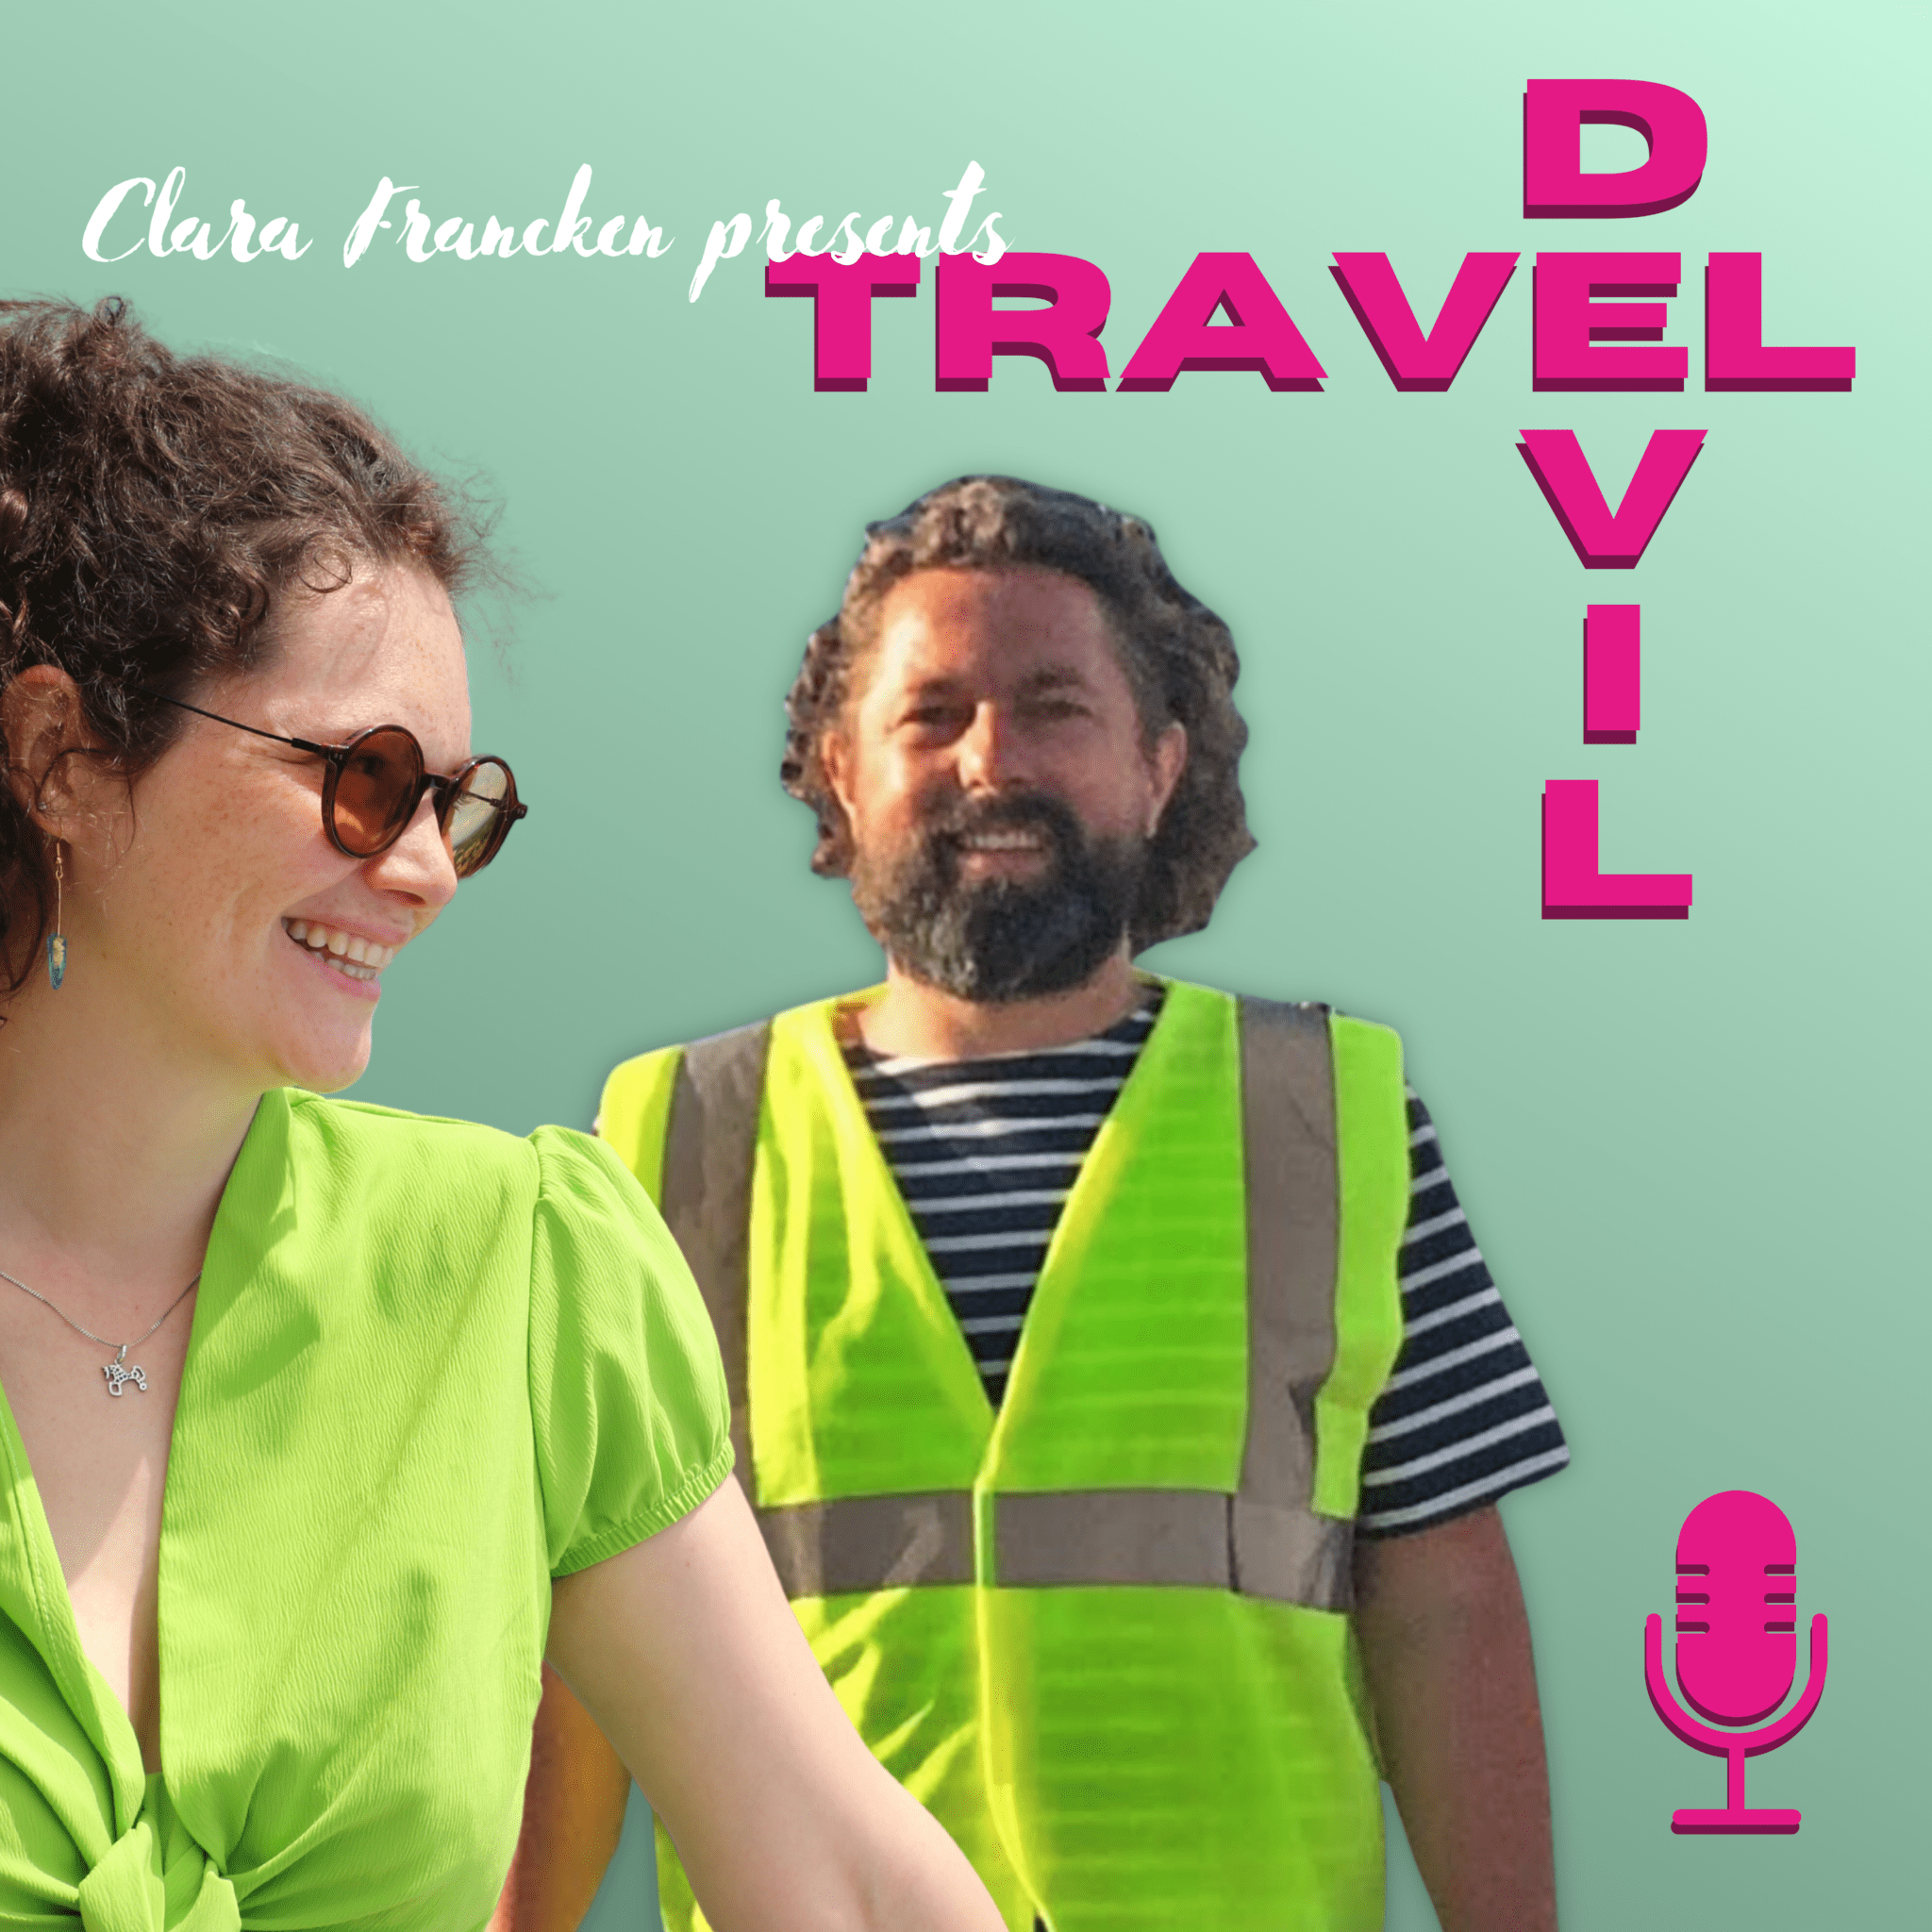 Podcast cover tekst: Clara Francken presenteert Travel Devil, afbeelding: meisje met zonnebril en groen tshirt kijkt naar rechts, man in het midden is Joris Van Bree en draagt een geel veiligheidshesje